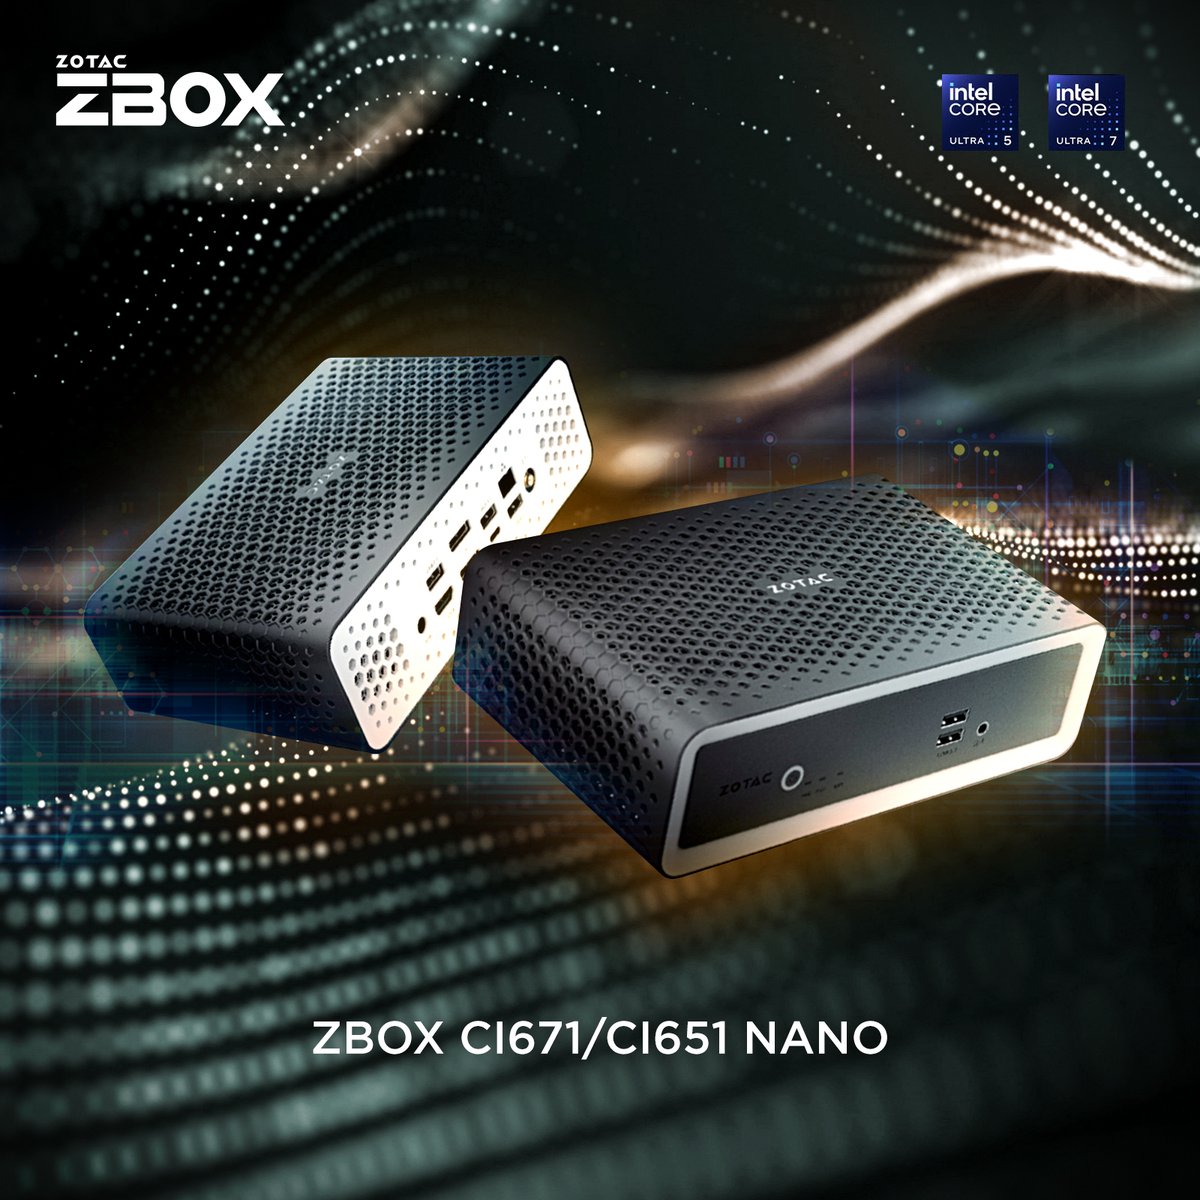 この静寂をお楽しみください 新しいZBOX CI671 / CI651 nanoは、強力なパッシブ冷却の静音PCです 詳細はこちら - bit.ly/3TT7Pda #ZOTAC #ZBOX #CI671 #CI651 #nano